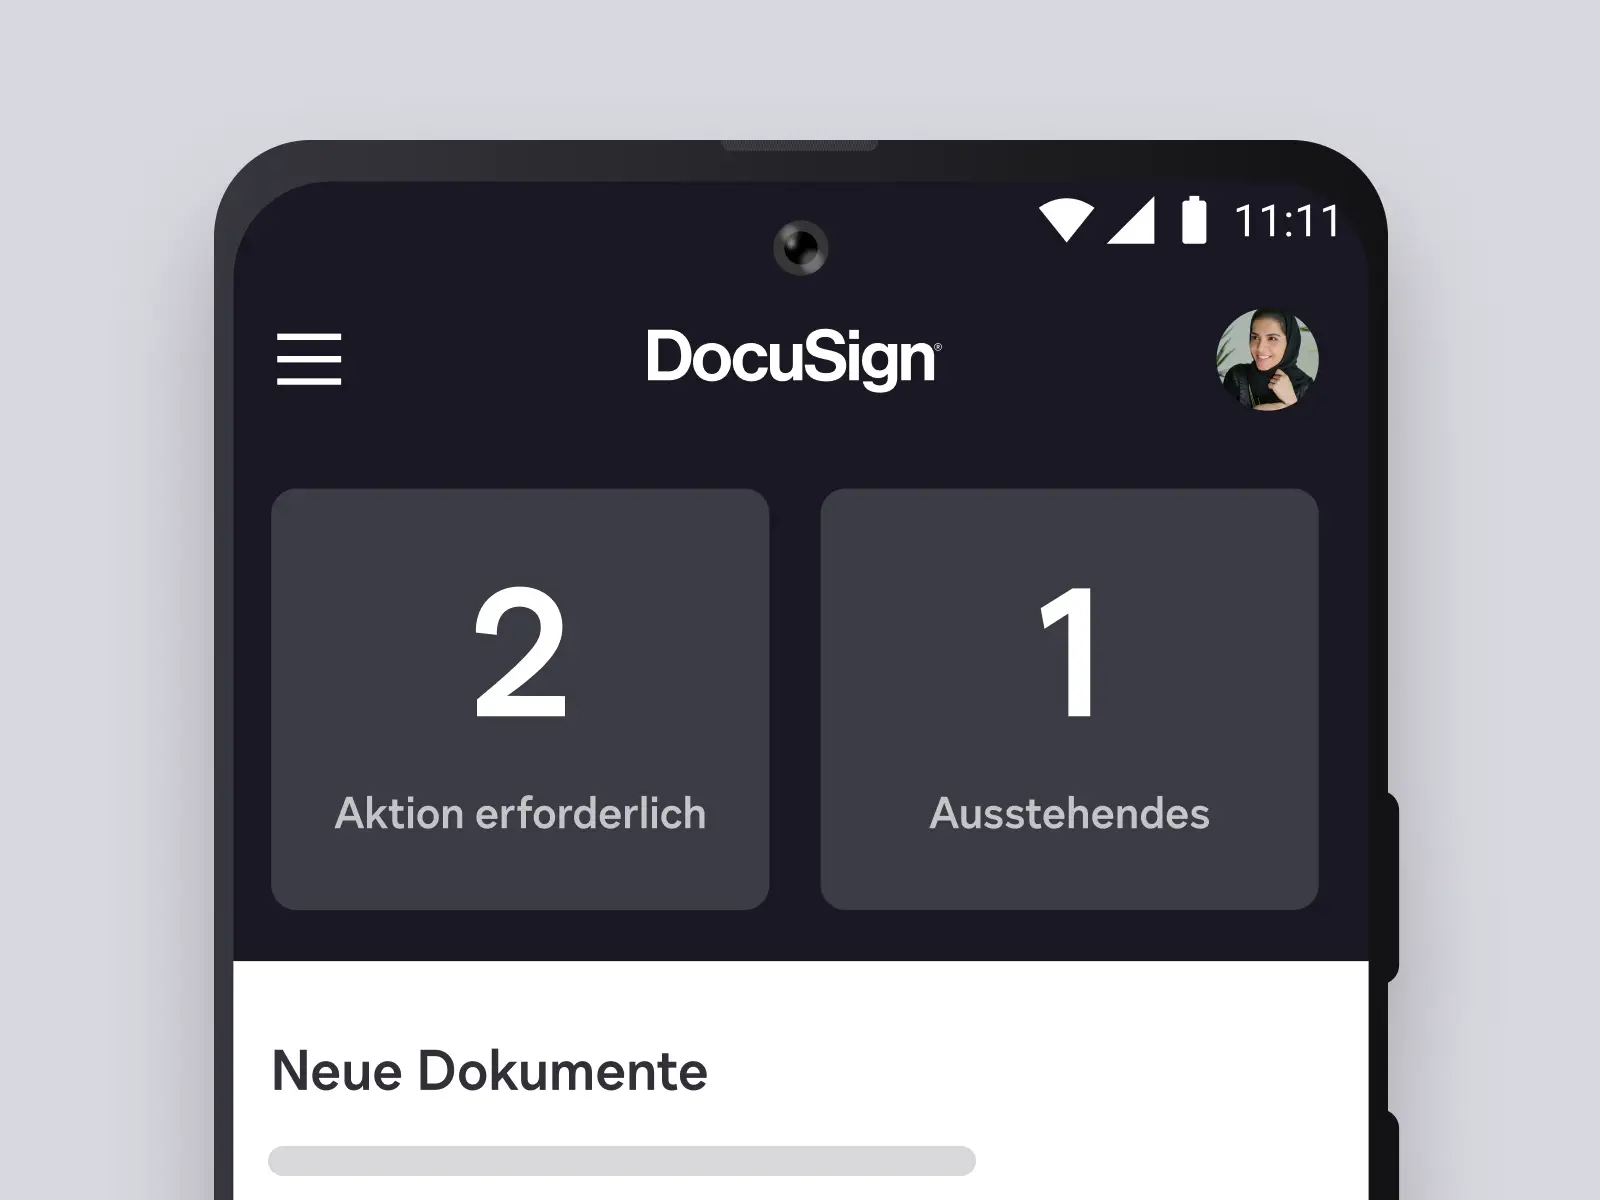 Handydisplay zeigt DocuSign-App mit aktuellen Dokumenten und erforderlichen Aktionen